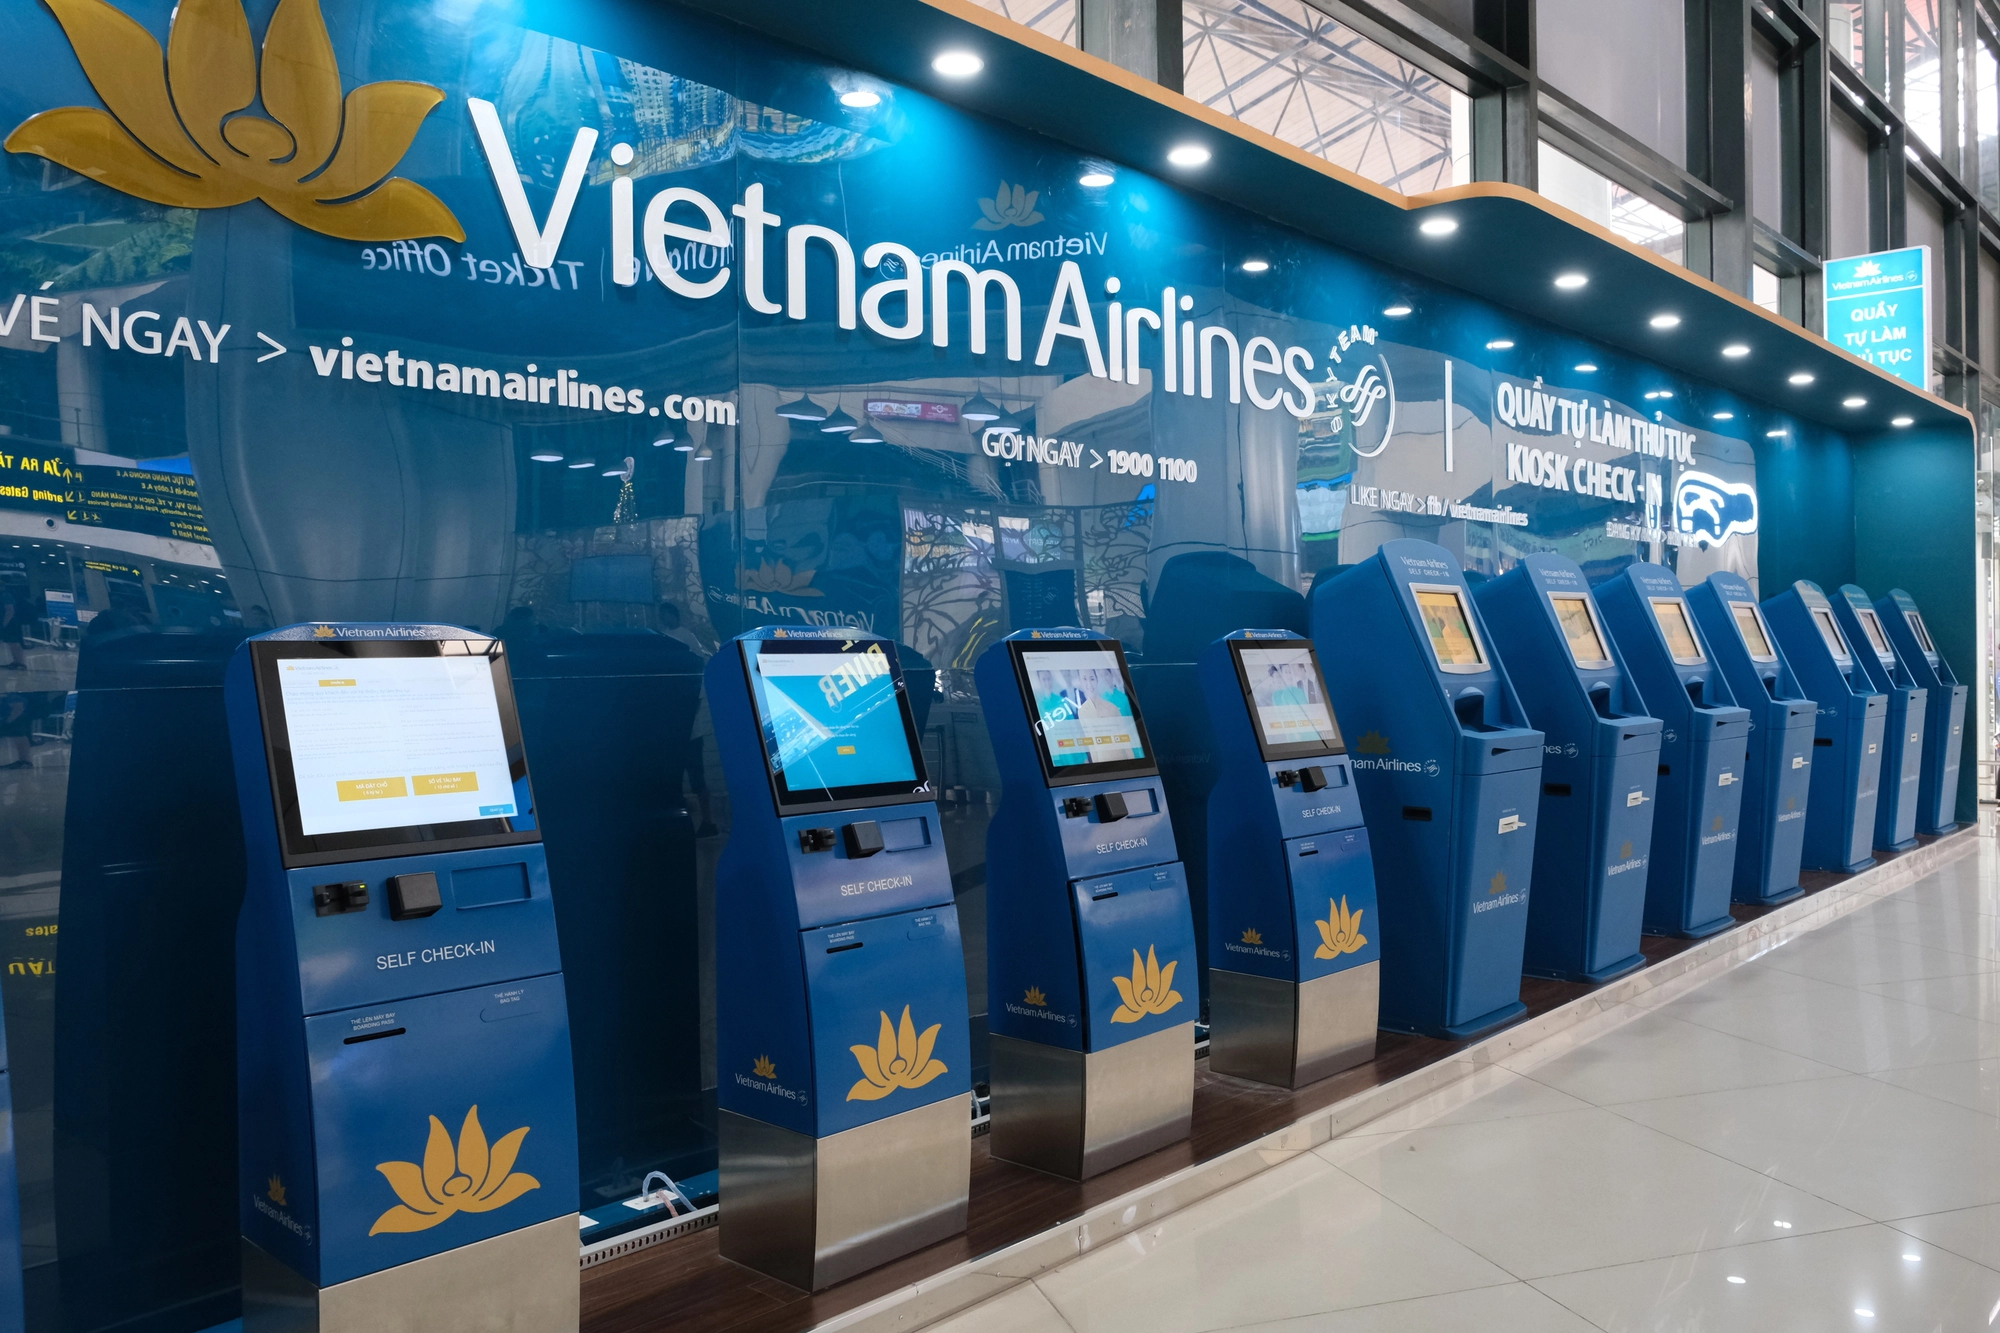 Sân bay Nội Bài và Tân Sơn Nhất dự kiến đón gần 1 triệu lượt người dịp nghỉ lễ 30/4, hành khách cần lưu ý những gì khi đi máy bay? - Ảnh 3.